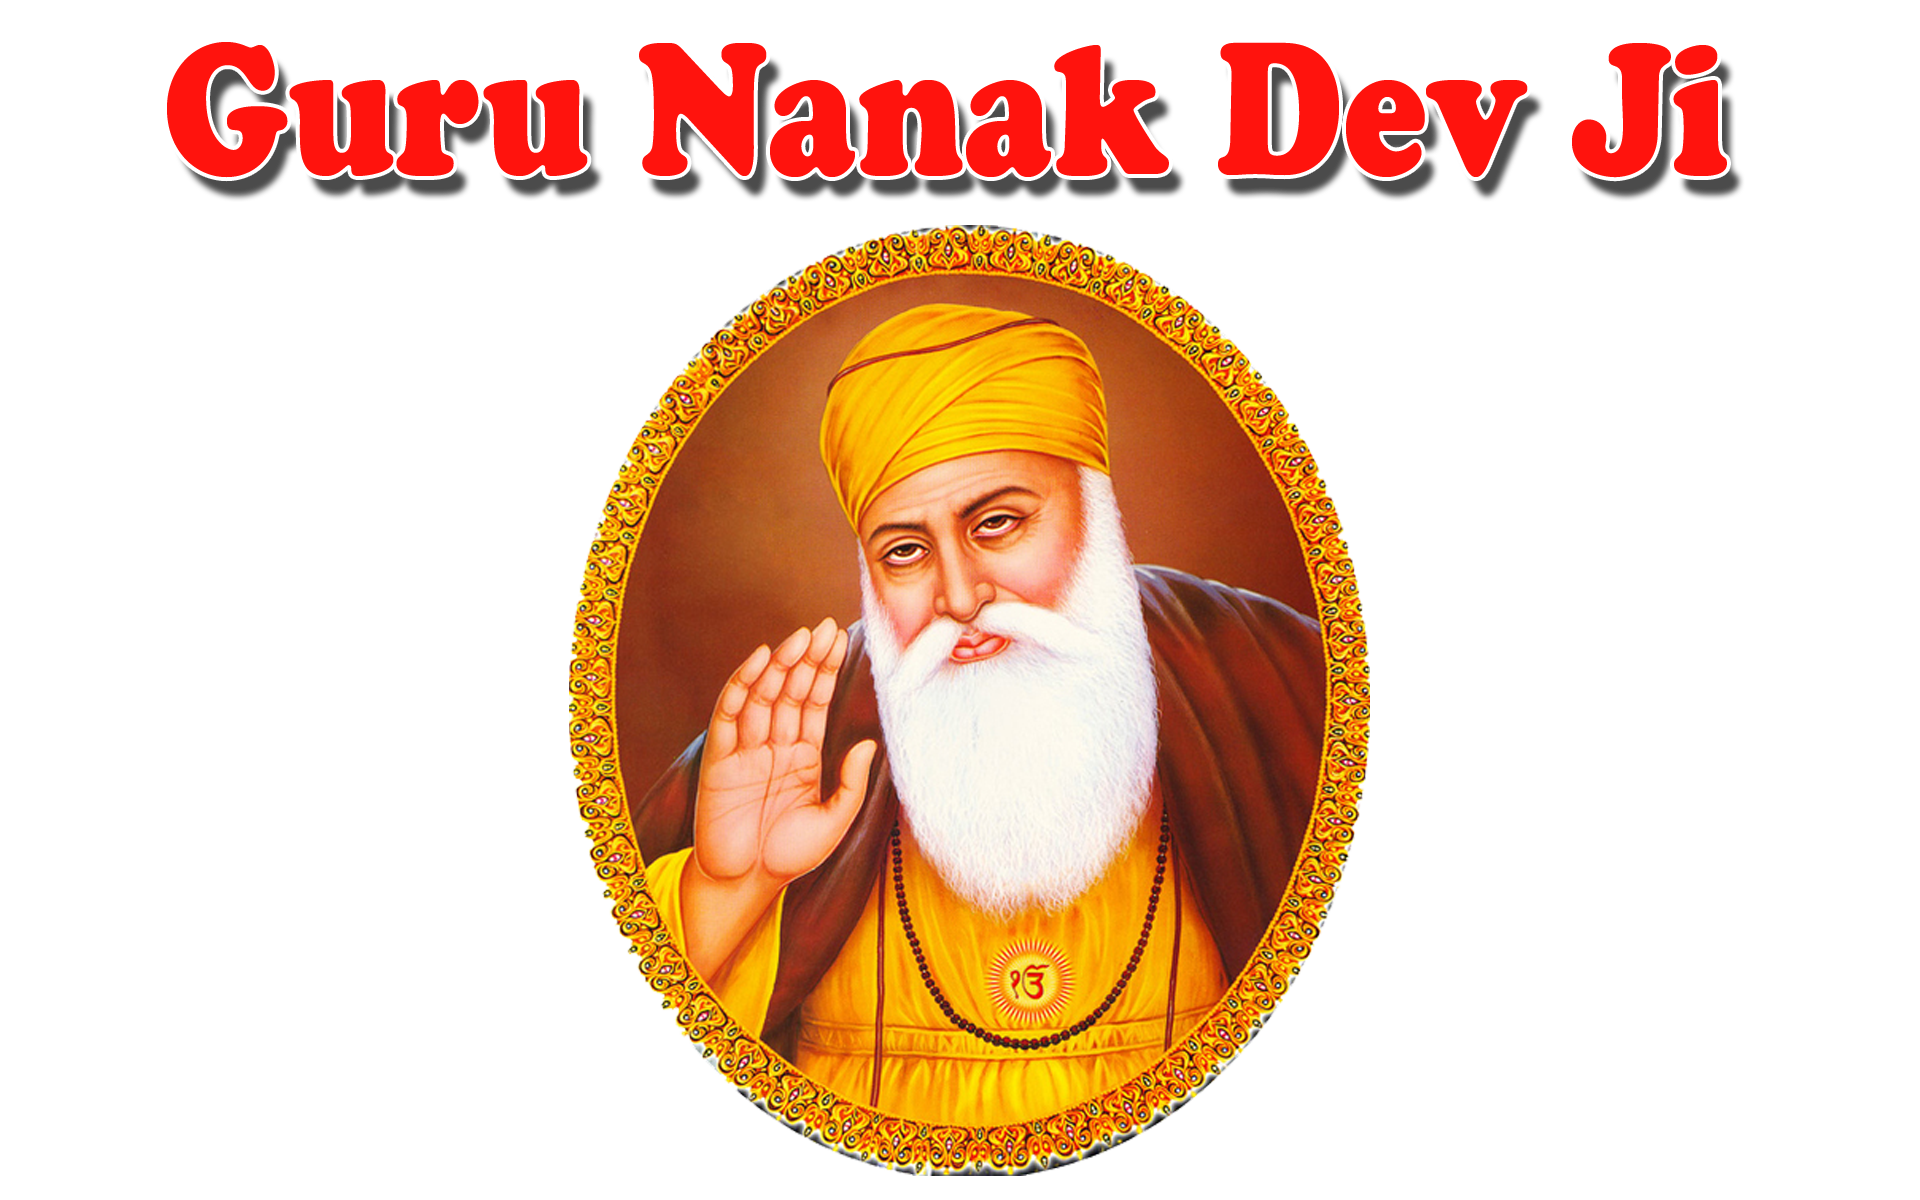 Guru Nanak Dev Ji Png Pictures - Guru Nanak Dev Ji Png - 1920x1200 Wallpaper  